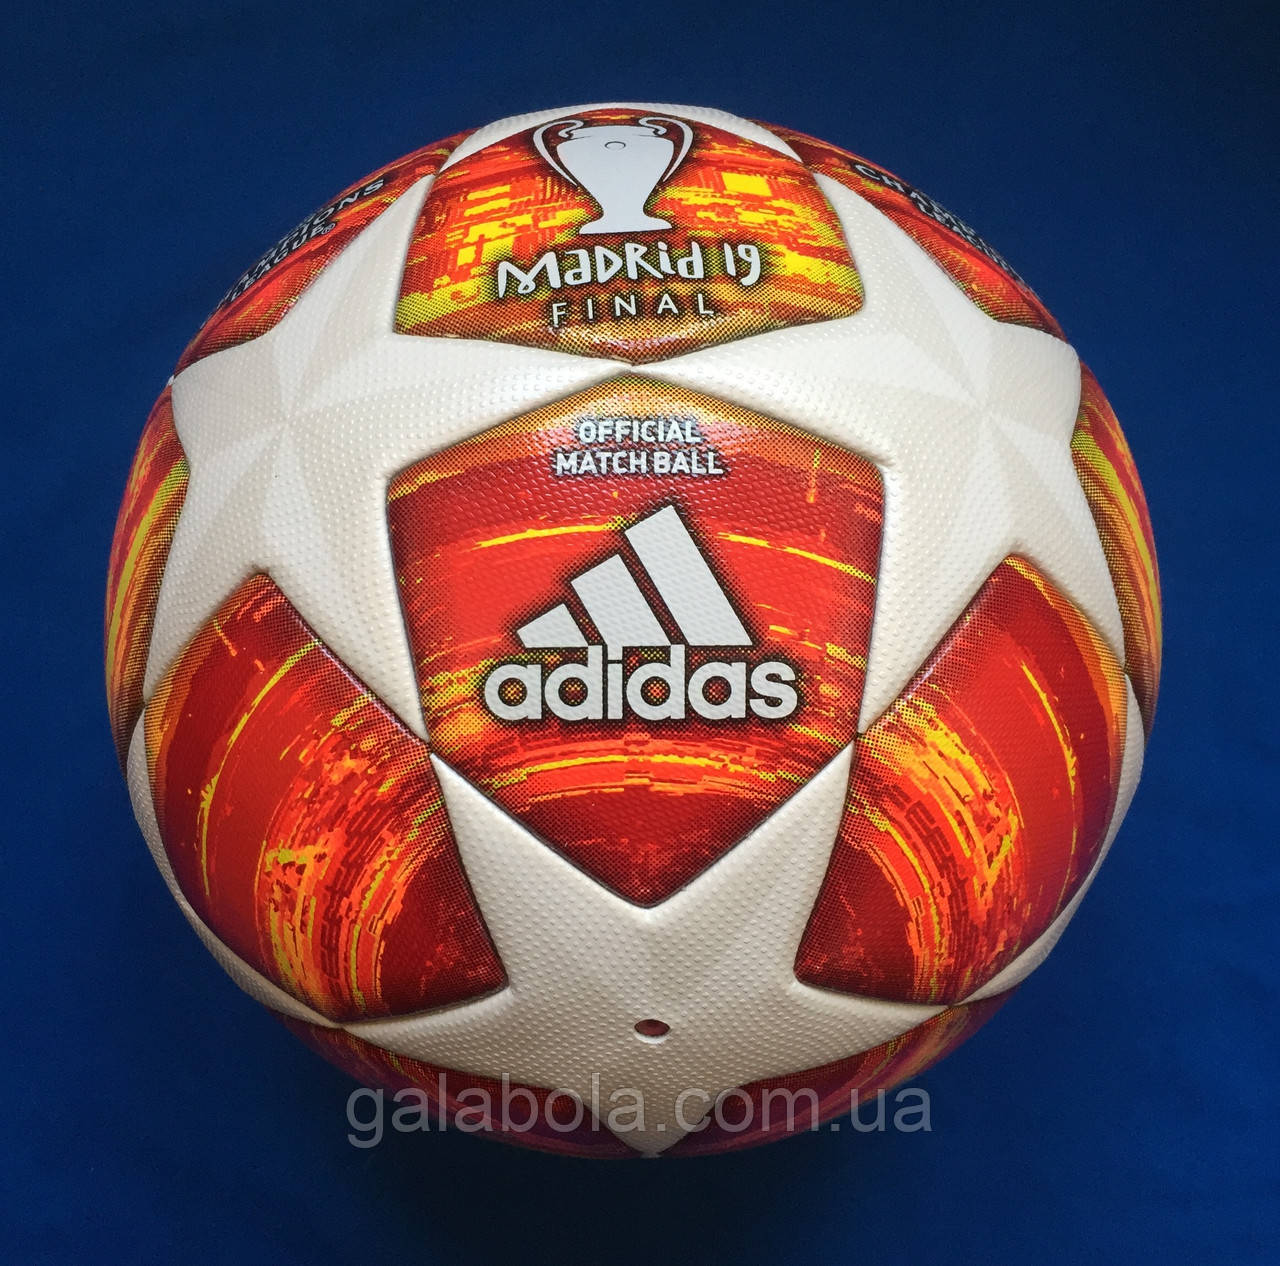 Купить Мяч футбольный Adidas Finale Madrid 19 OMB DN8685 Без (размер 5), цена 3600 ₴ — Prom.ua (ID#1322181888)